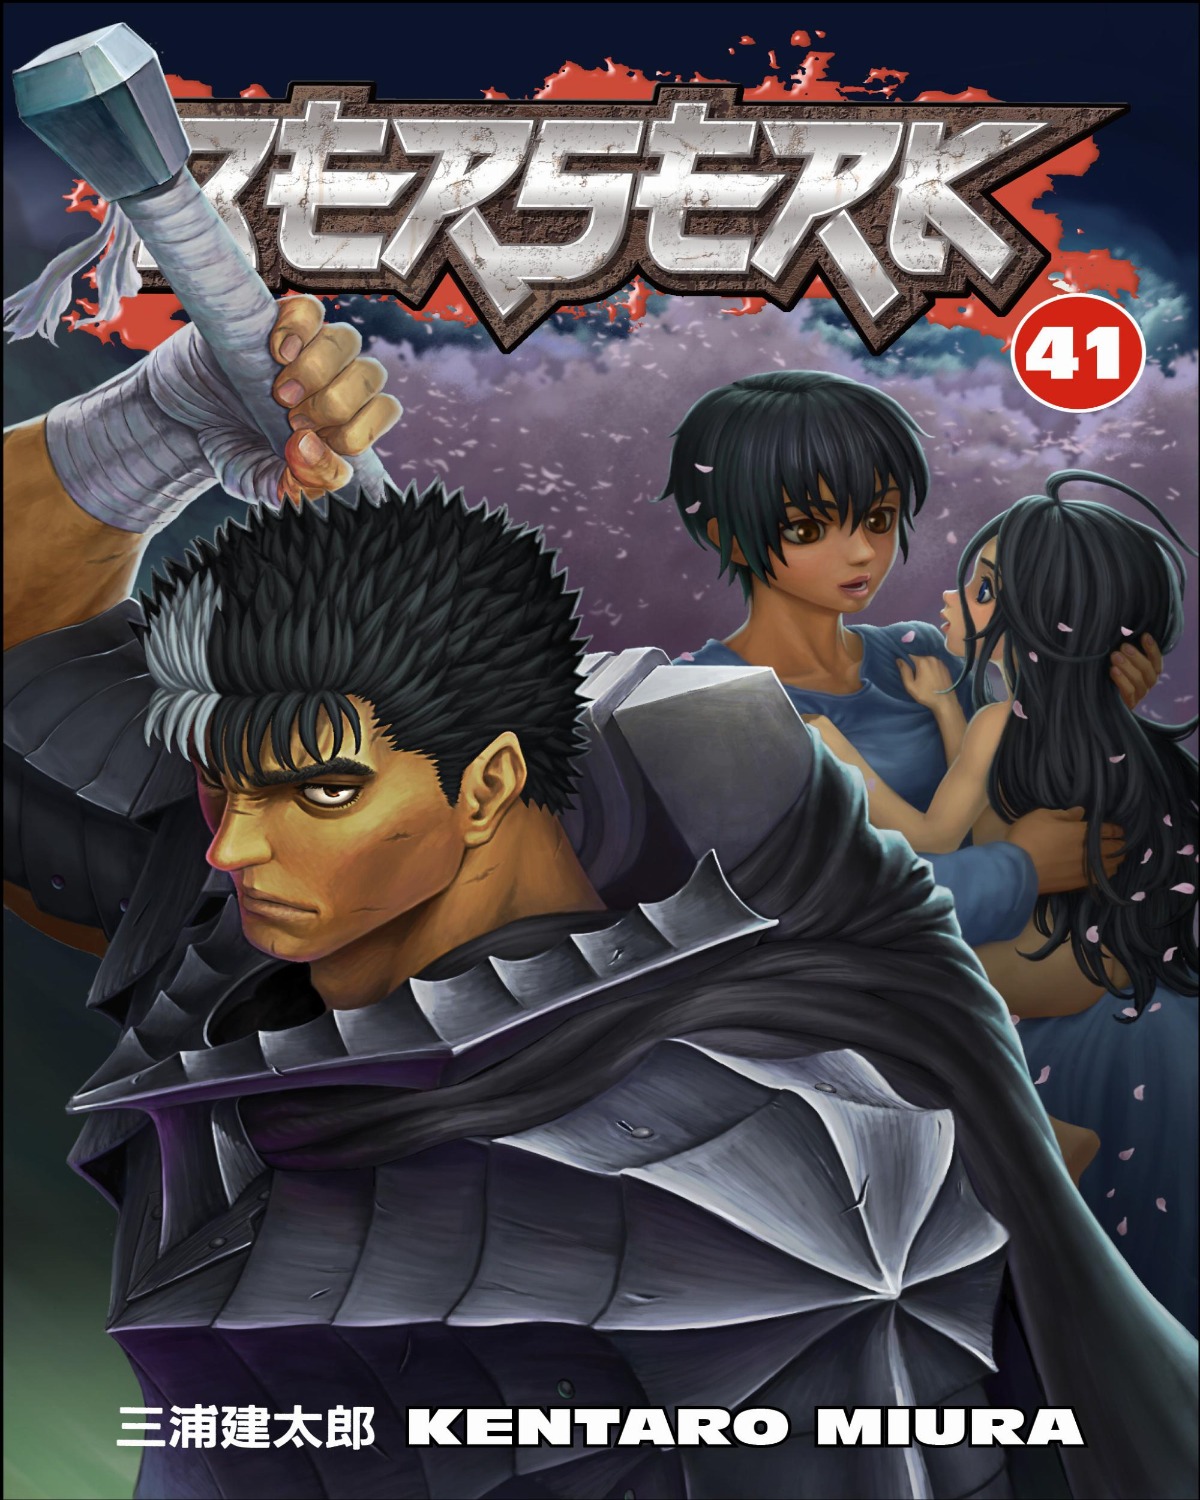 Tập truyện Berserk kỉ niệm về tác giả Kentaro Miura được bán ra với số lượng có hạn